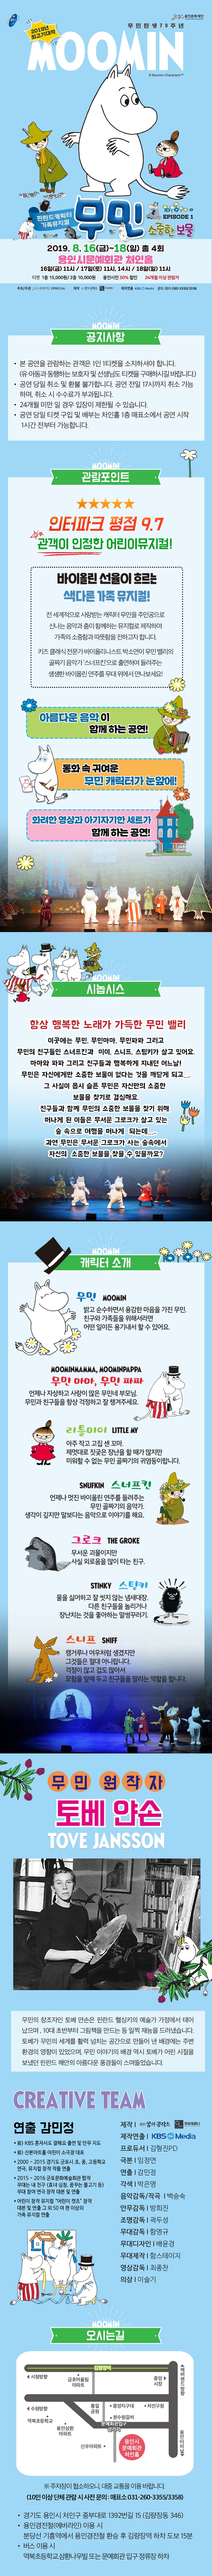 용인문화재단 무민 탄생 70 주년 2019년 최고기대작 MOOMIN Moomin Characters 핀란드 캐릭터가족뮤지컬  무민 EPISODE 1 소중한보물  2019. 8. 16(금)~18(일) 총 4회 용인시문회관 처인홀 16일(금) 11시 / 17일(토) 11시, 14시 / 18일(일) 11시 티켓 1층 15,000원/ 2층 10,000원 용인시민 30% 할인 24개월 이상 관람가 주최/주관 용인문학재단 DPMO Ent. 제작 꿈의 공작소 안녕컴퍼니 제작연출 KBS Media 문의 031-260-3355/3358 MOOMIN공지사항 · 본 공연을 관람하는 관객은 1인 1티켓을 소지하셔야 합니다. (유아동과 동행하는 보호자 및 선생님도 티켓을 구매하시길 바랍니다.) · 공연 당일 취소 및 환불 불가합니다. 공연 전일 17시까지 취소 가능 하며, 취소 시 수수료가 부과됩니다. • 24개월 미만 일 경우 입장이 제한될 수 있습니다. · 공연 당일 티켓 구입 및 배부는 처인홀 1층 매표소에서 공연 시작 1시간 전부터 가능합니다.  MOOMIN 관람포인트 .. 인터파크 평점 9.7 관객이 인정한 어린이뮤지컬! 바이올린 선율이 흐르는 색다른 가족 뮤지컬! 전 세계적으로 사랑받는 캐릭터 무민을 주인공으로 신나는 음악과 춤이 함께하는 뮤지컬로 제작하여 가족의 소중함과 따뜻함을 전하고자 합니다. 키즈 클래식 전문가 바이올리니스트 박소연이 무민 밸리의 골짜기 음악가 스너프킨'으로 출연하여 들려주는 생생한 바이올린 연주를 무대 위에서 만나보세요! 아름다운 음악이 함께하는 공연!  동화속 귀여운 무민 캐릭터가 눈앞에 화려한 영상과 아기자기한 세트가 함께 하는 공연! MOOMIN 시놉시스  함상 행복한 노래가 가득한 무민 밸리 이곳에는 무민, 무민마마, 무민파파 그리고 무민의 친구들인 스너프킨과 미이, 스니프, 스팀키가 살고 있어요. 마마와 파파 그리고 친구들과 행복하게 지내던 어느날!! 무민은 자신에게만 소중한 보물이 없다는 것을 깨닫게 되고.... 그 사실이 몹시 슬픈 무민은 자신만의 소중한 보물을 찾기로 결심해요. My 친구들과 함께 무민의 소중한 보물을 찾기 위해 떠나게 된 이들은 무서운 그로크가 살고 있는 숲 속으로 여행을 떠나게 되는데..... 과연 무민은 무서운 그로크가 사는 숲속에서 자신의 소중한 보물을 찾을 수 있을까요? MOOMIN 캐릭터 소개 . 무민 MOOMIN 밝고 순수하면서 용감한 마음을 가진 무민. 친구와 가족들을 위해서라면 Im 어떤 일이든 용기내서 할 수 있어요. MOOMINMAMMA, MOOMINPAPPA 무민 마마, 무민 파파 언제나 자상하고 사랑이 많은 무민네 부모님. 무민과 친구들을 항상 걱정하고 잘 챙겨주세요.  리틀미이 LITTLE MY 아주 작고 고집 센 꼬마. 제멋대로 짓궂은 장난을 할 때가 많지만 미워할 수 없는 무민 골짜기의 귀염둥이랍니다. SNUFKIN 스너프킨 언제나 멋진 바이올린 연주를 들려주는 무민 골짜기의 음악가. 생각이 깊지만 말보다는 음악으로 이야기를 해요. 그로크 THE GROKE 무서운 괴물이지만  사실 외로움을 많이 타는 친구. STINKY  스팅키 물을 싫어하고 잘 씻지 않는 냄새대장.  다른 친구들을 놀리거나 장난치는 것을 좋아하는 말썽꾸러기. 스니프 SNIFF 캥거루나 여우처럼 생겼지만 그것들은 절대 아니랍니다. 걱정이 많고 겁도 많아서 모험을 앞에 두고 친구들을 말리는 역할을 합니다. 무민 원작자 토베 얀손 TOVE JANSSON 무민의 창조자인 토베 얀손은 핀란드 헬싱키의 예술가 가정에서 태어 났으며, 10대 초반부터 그림책을 만드는 등 일찍 재능을 드러냈습니다. 토베가 무민의 세계를 활력 넘치는 공간으로 만들어 낸 배경에는 주변 환경의 영향이 있었으며, 무민 이야기의 배경 역시 토베가 어린 시절을 보냈던 핀란드 해안의 아름다운 풍경들이 스며들었습니다. CREATIVE TEAM 연출 감민정 * 前) KBS 혼자서도 잘해요 출연 및 안무 지도 * 前) 산본아트홀 어린이 소극장 대표 * 2000 ~ 2015 경기도 군포시 초, 중, 고등학교 연극, 뮤지컬 창작 작품 연출 * 2015 ~ 2016 군포문화예술회관 합작 무대는 내 친구 (효녀 심청, 꿈꾸는 물고기 등) 무대 참여 연극 창작 대본 및 연출 * 어린이 창작 뮤지컬 “어린이 캣츠” 창작 대본 및 연출 그 외 50 여 편 이상의 가족 뮤지컬 연출 제작 극단꿈의 공작소 안녕컴퍼니 제작연출 KBS Media 프로듀서  김형진PD 극본 임정연 연출 감민정 각색 박은영 음악감독/작곡 백승숙 안무감독 방희진 조명감독 곽두성 무대감독  함영규 무대디자인  배윤경 무대제작  함스테이지 영상감독 최종찬 의상 이슬기 MOOMIN 오시는길 . 김량장역 (시청방향 금호어울림 아파트 중앙 ▶ 시장 에버랜드방향 통 일 • 중앙지구대 • 처인구청 (수원방향 공 원 역북초등학교 용인삼환 아파트 • 본수원갈비 문예회관입구 삼거리 신우아파트 · 용인시 문예회관 처인홀 용인터미널) ※ 주차장이 협소하오니, 대중교통을 이용 바랍니다. (10인 이상 단체관람 시 사전 문의 : 매표소 031-260-3355/3358) · 경기도 용인시 처인구 중부대로 1392번길 15 (김량장동 346) • 용인경전철(에버라인) 이용 시 분당선 기흥역에서 용인경전철 환승 후 김량장역 하차 도보 15분 • 버스 이용시 역북초등학교삼환나우빌 또는 문예회관 입구 정류장 하차
